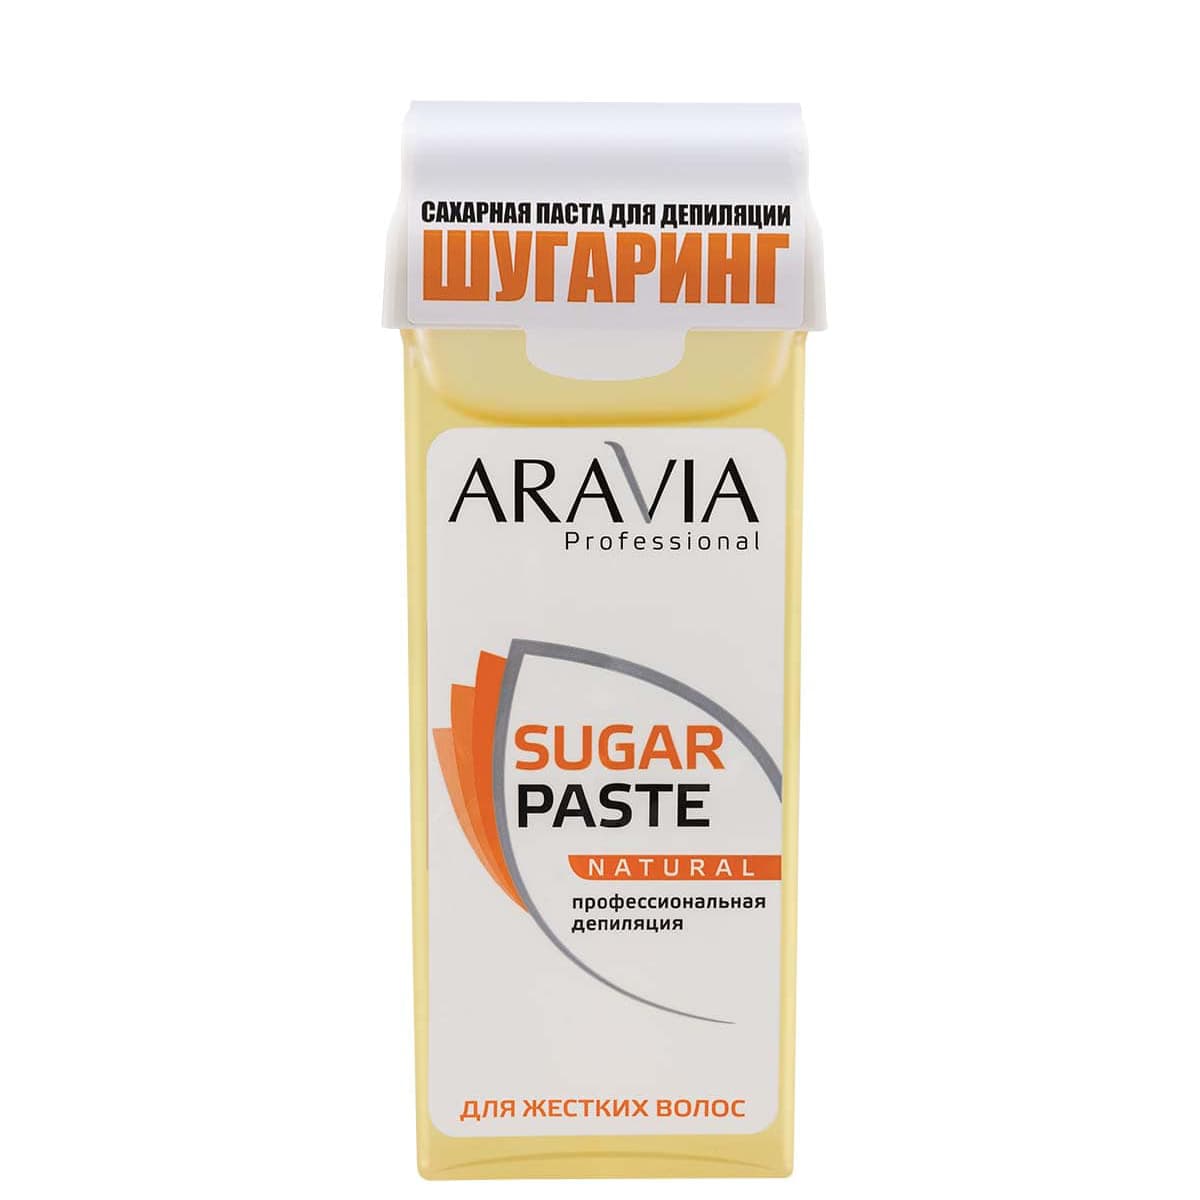 Aravia Сахарная паста для депиляции в картридже «Натуральная» мягкой консистенции, 150гр